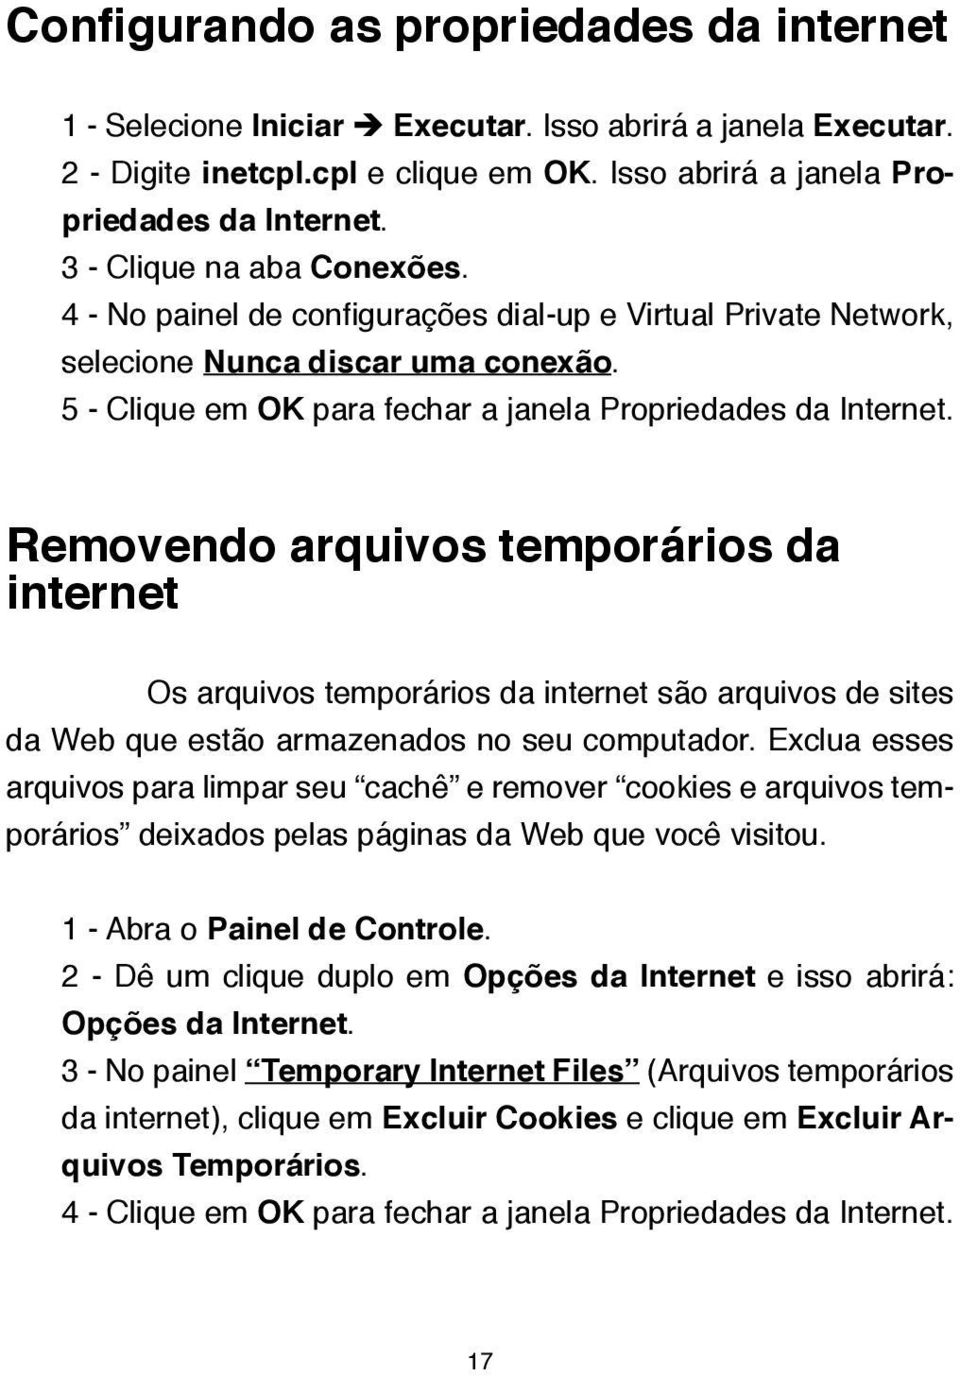 Removendo arquivos temporários da internet Os arquivos temporários da internet são arquivos de sites da Web que estão armazenados no seu computador.